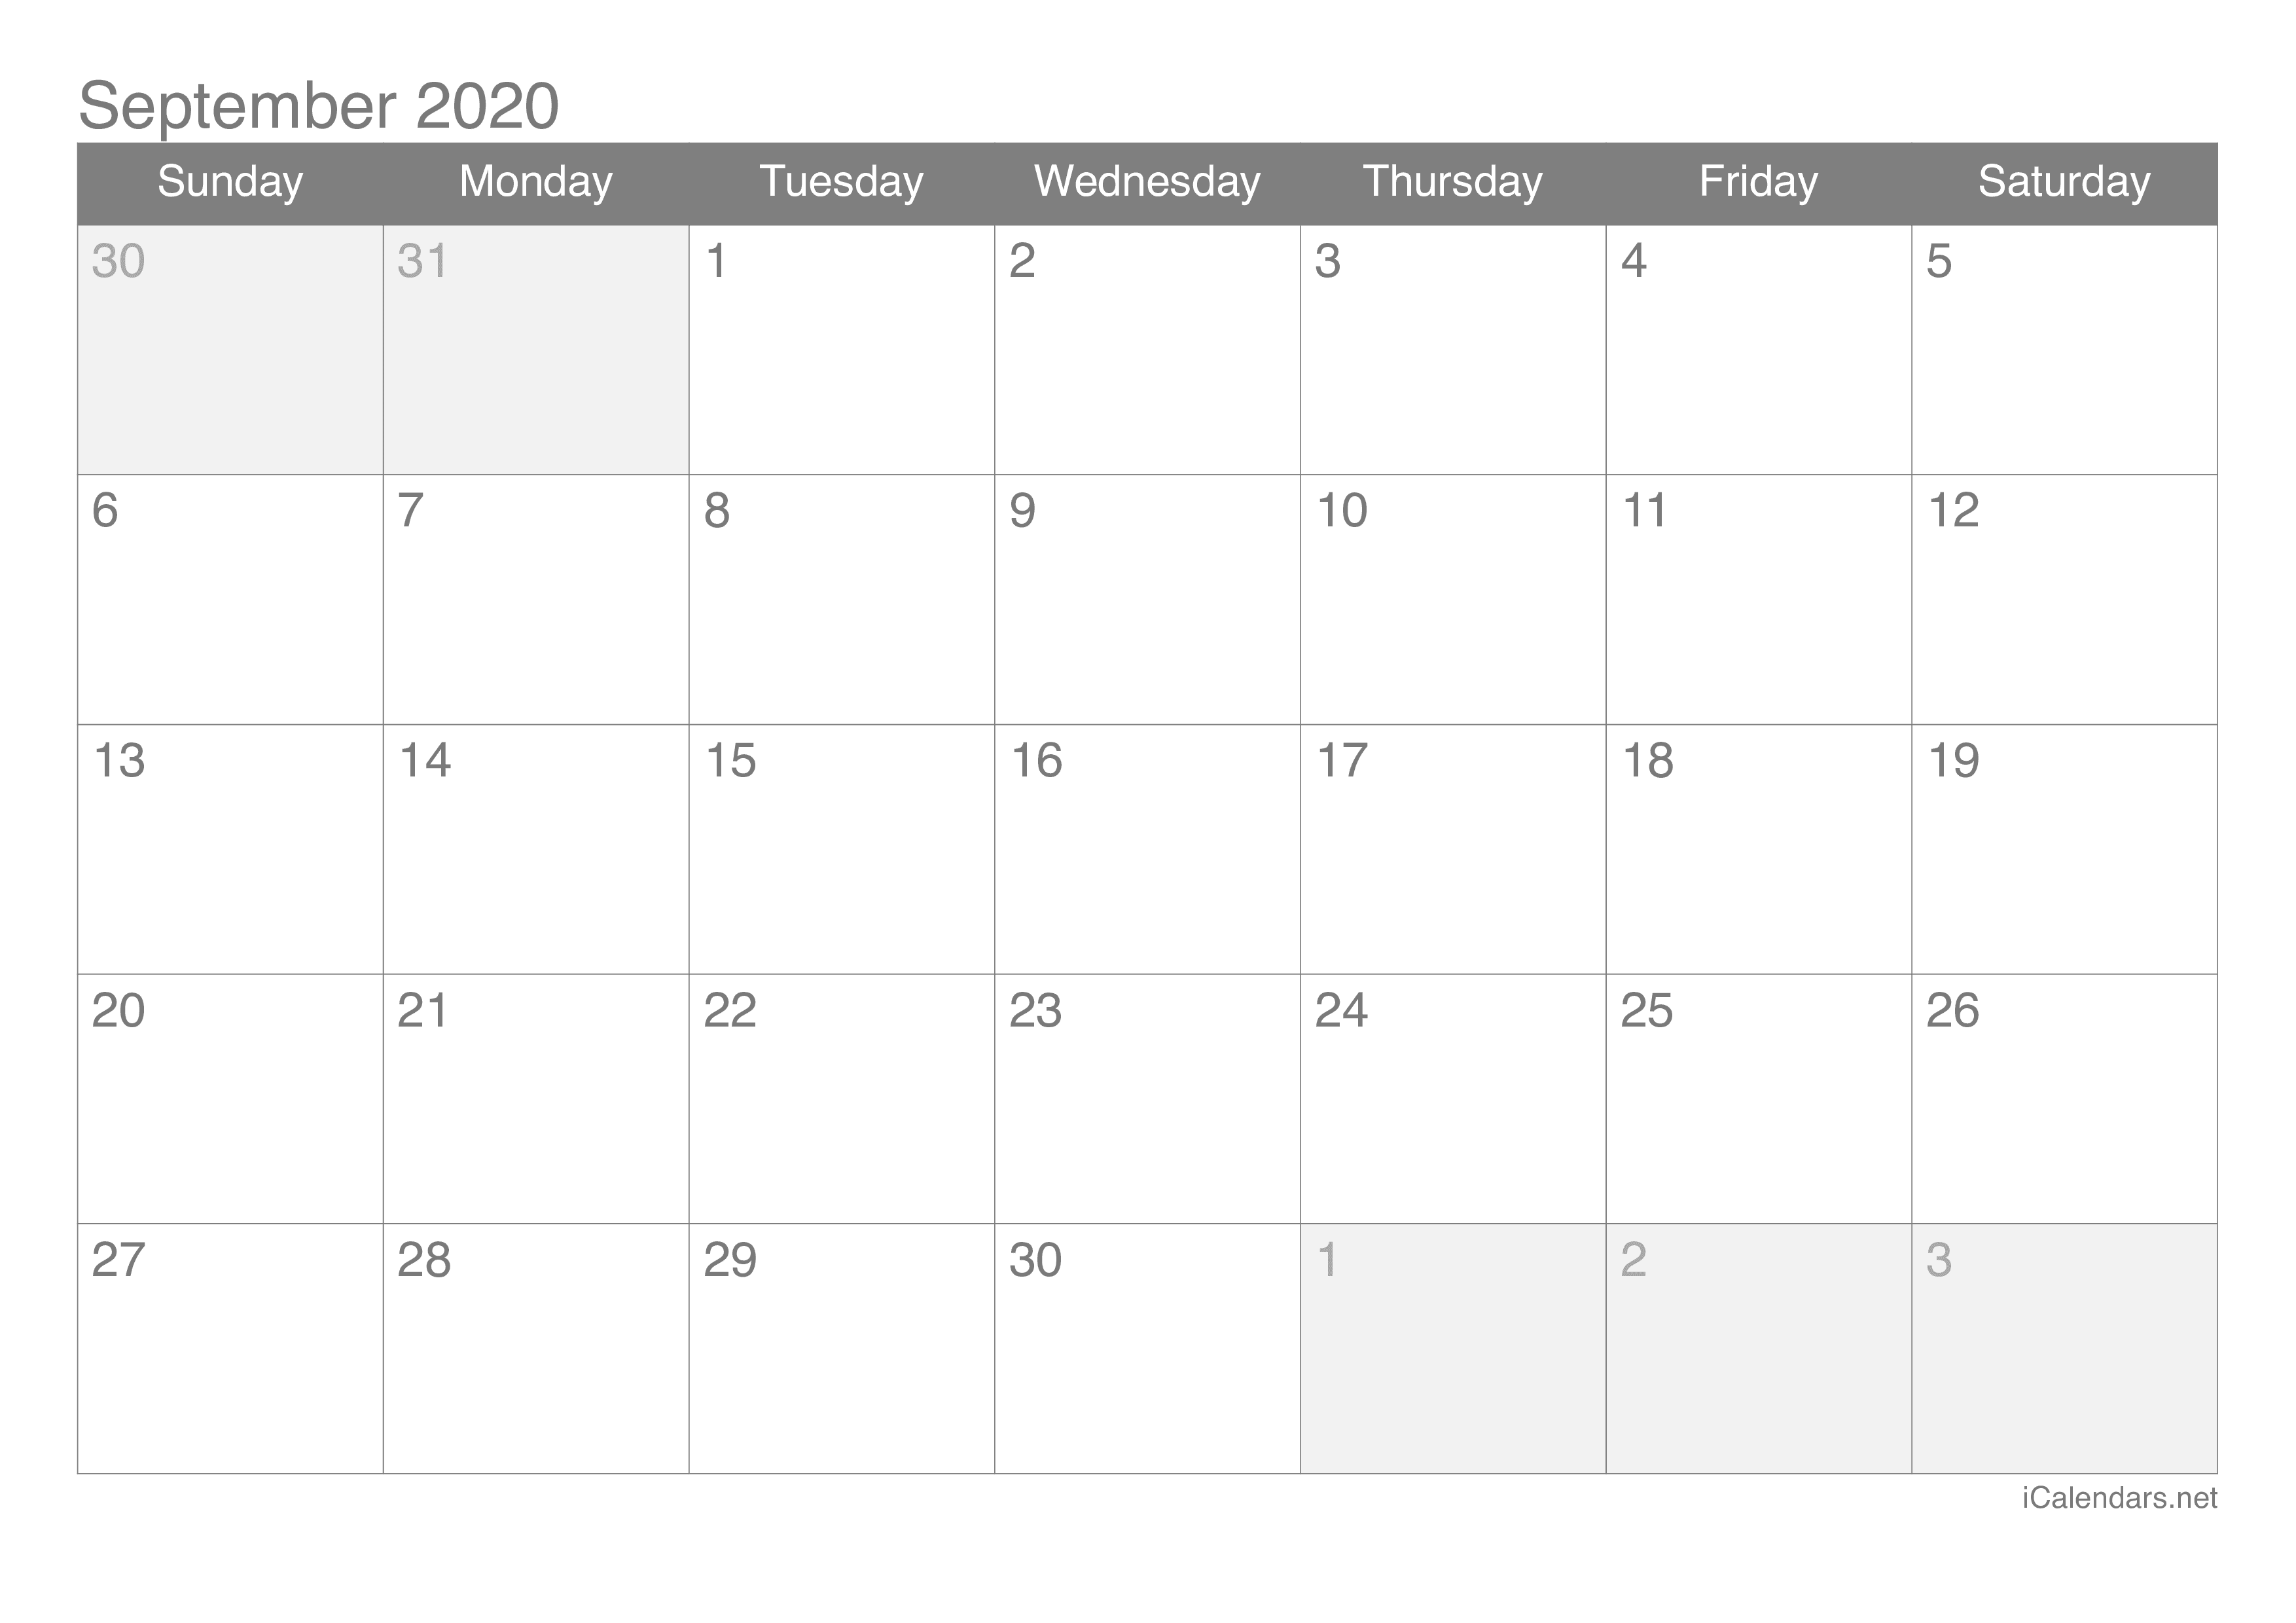 September 2020 Printable Calendar Icalendars Net